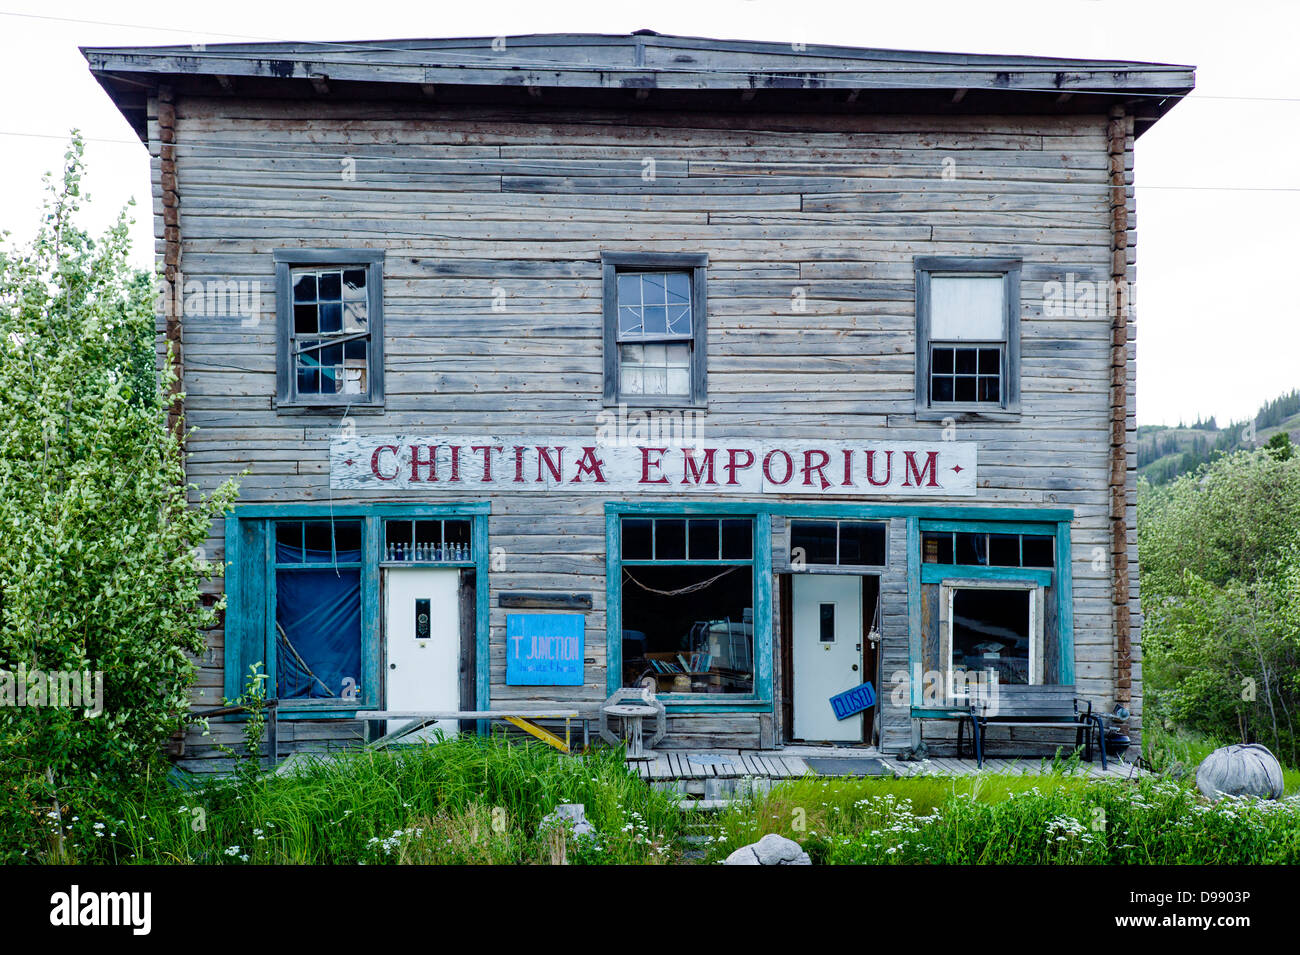 Viejo y destartalado Chitina Emporium, pequeño y remoto pueblo de Chitina, Alaska, EE.UU. Foto de stock